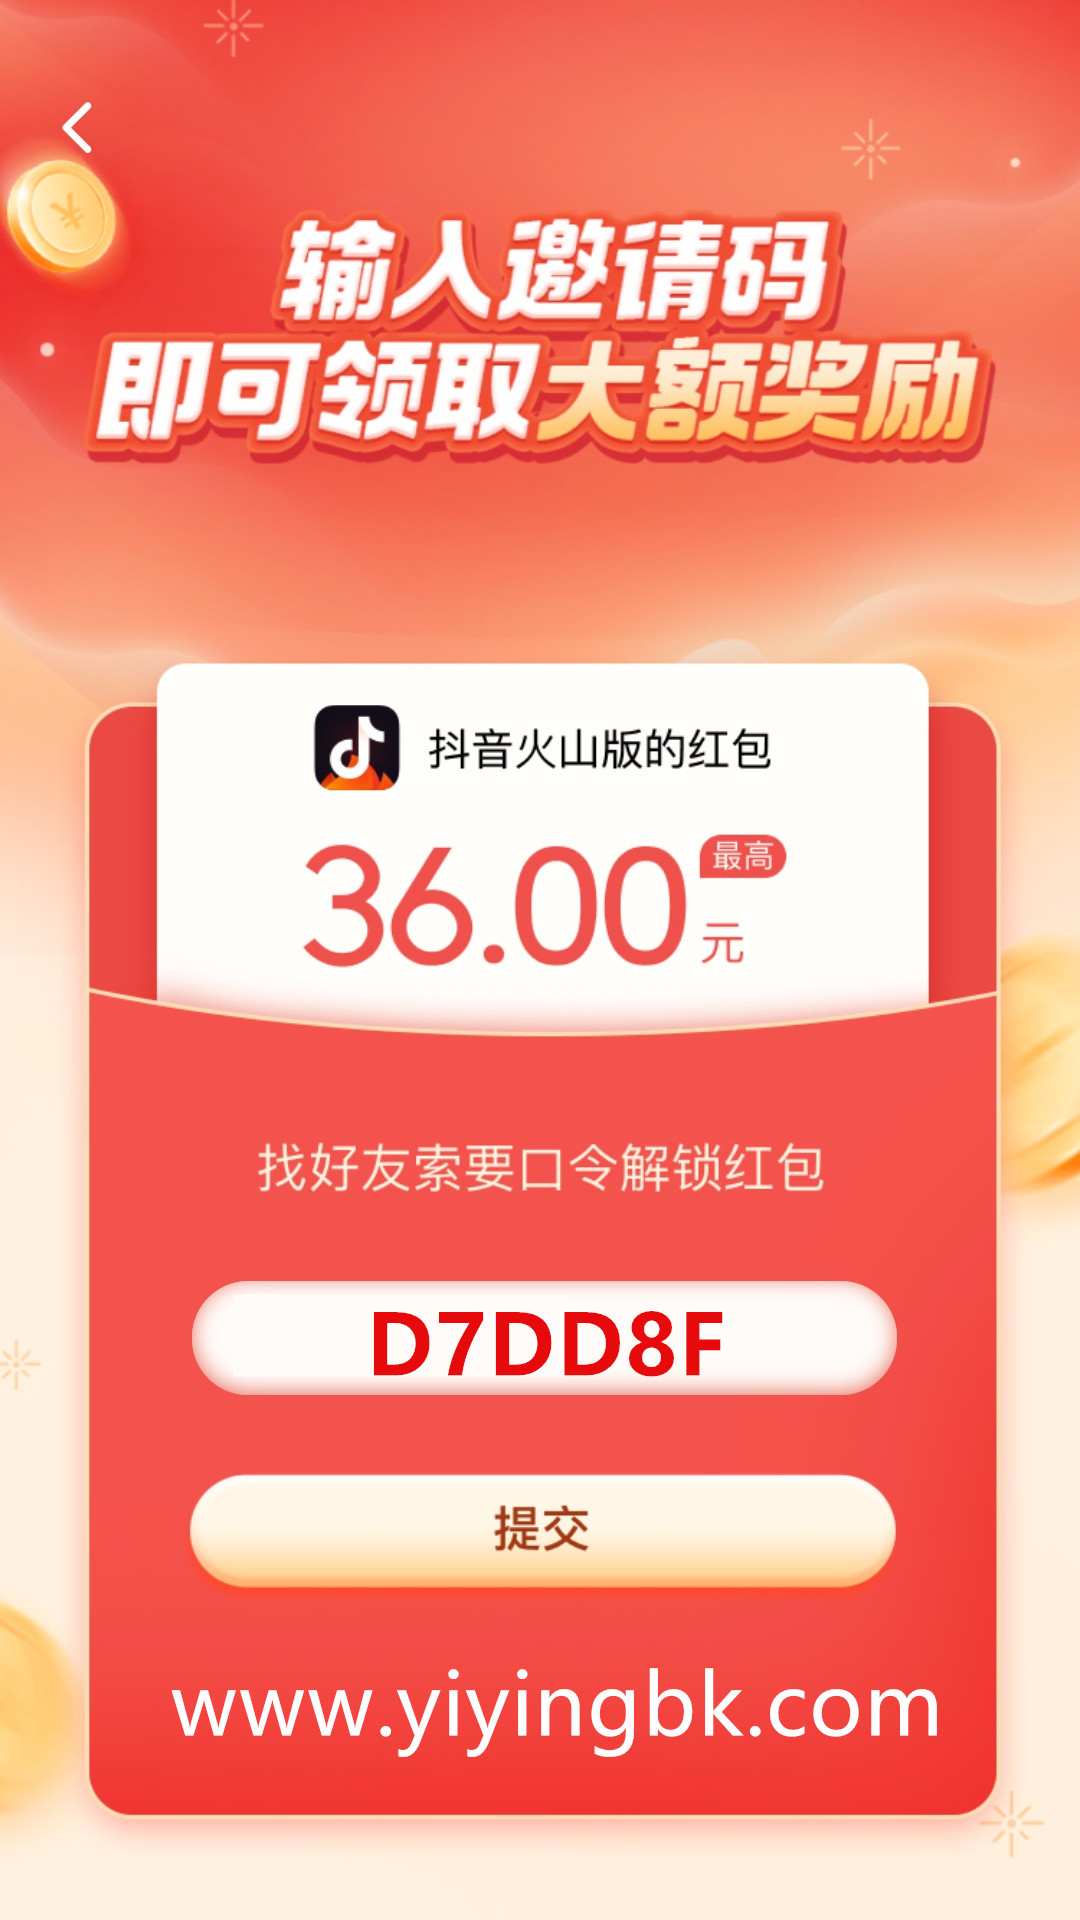 抖音火山版口令红包邀请码D7DD8F，领取最高36元红包奖励，www.yiyingbk.com